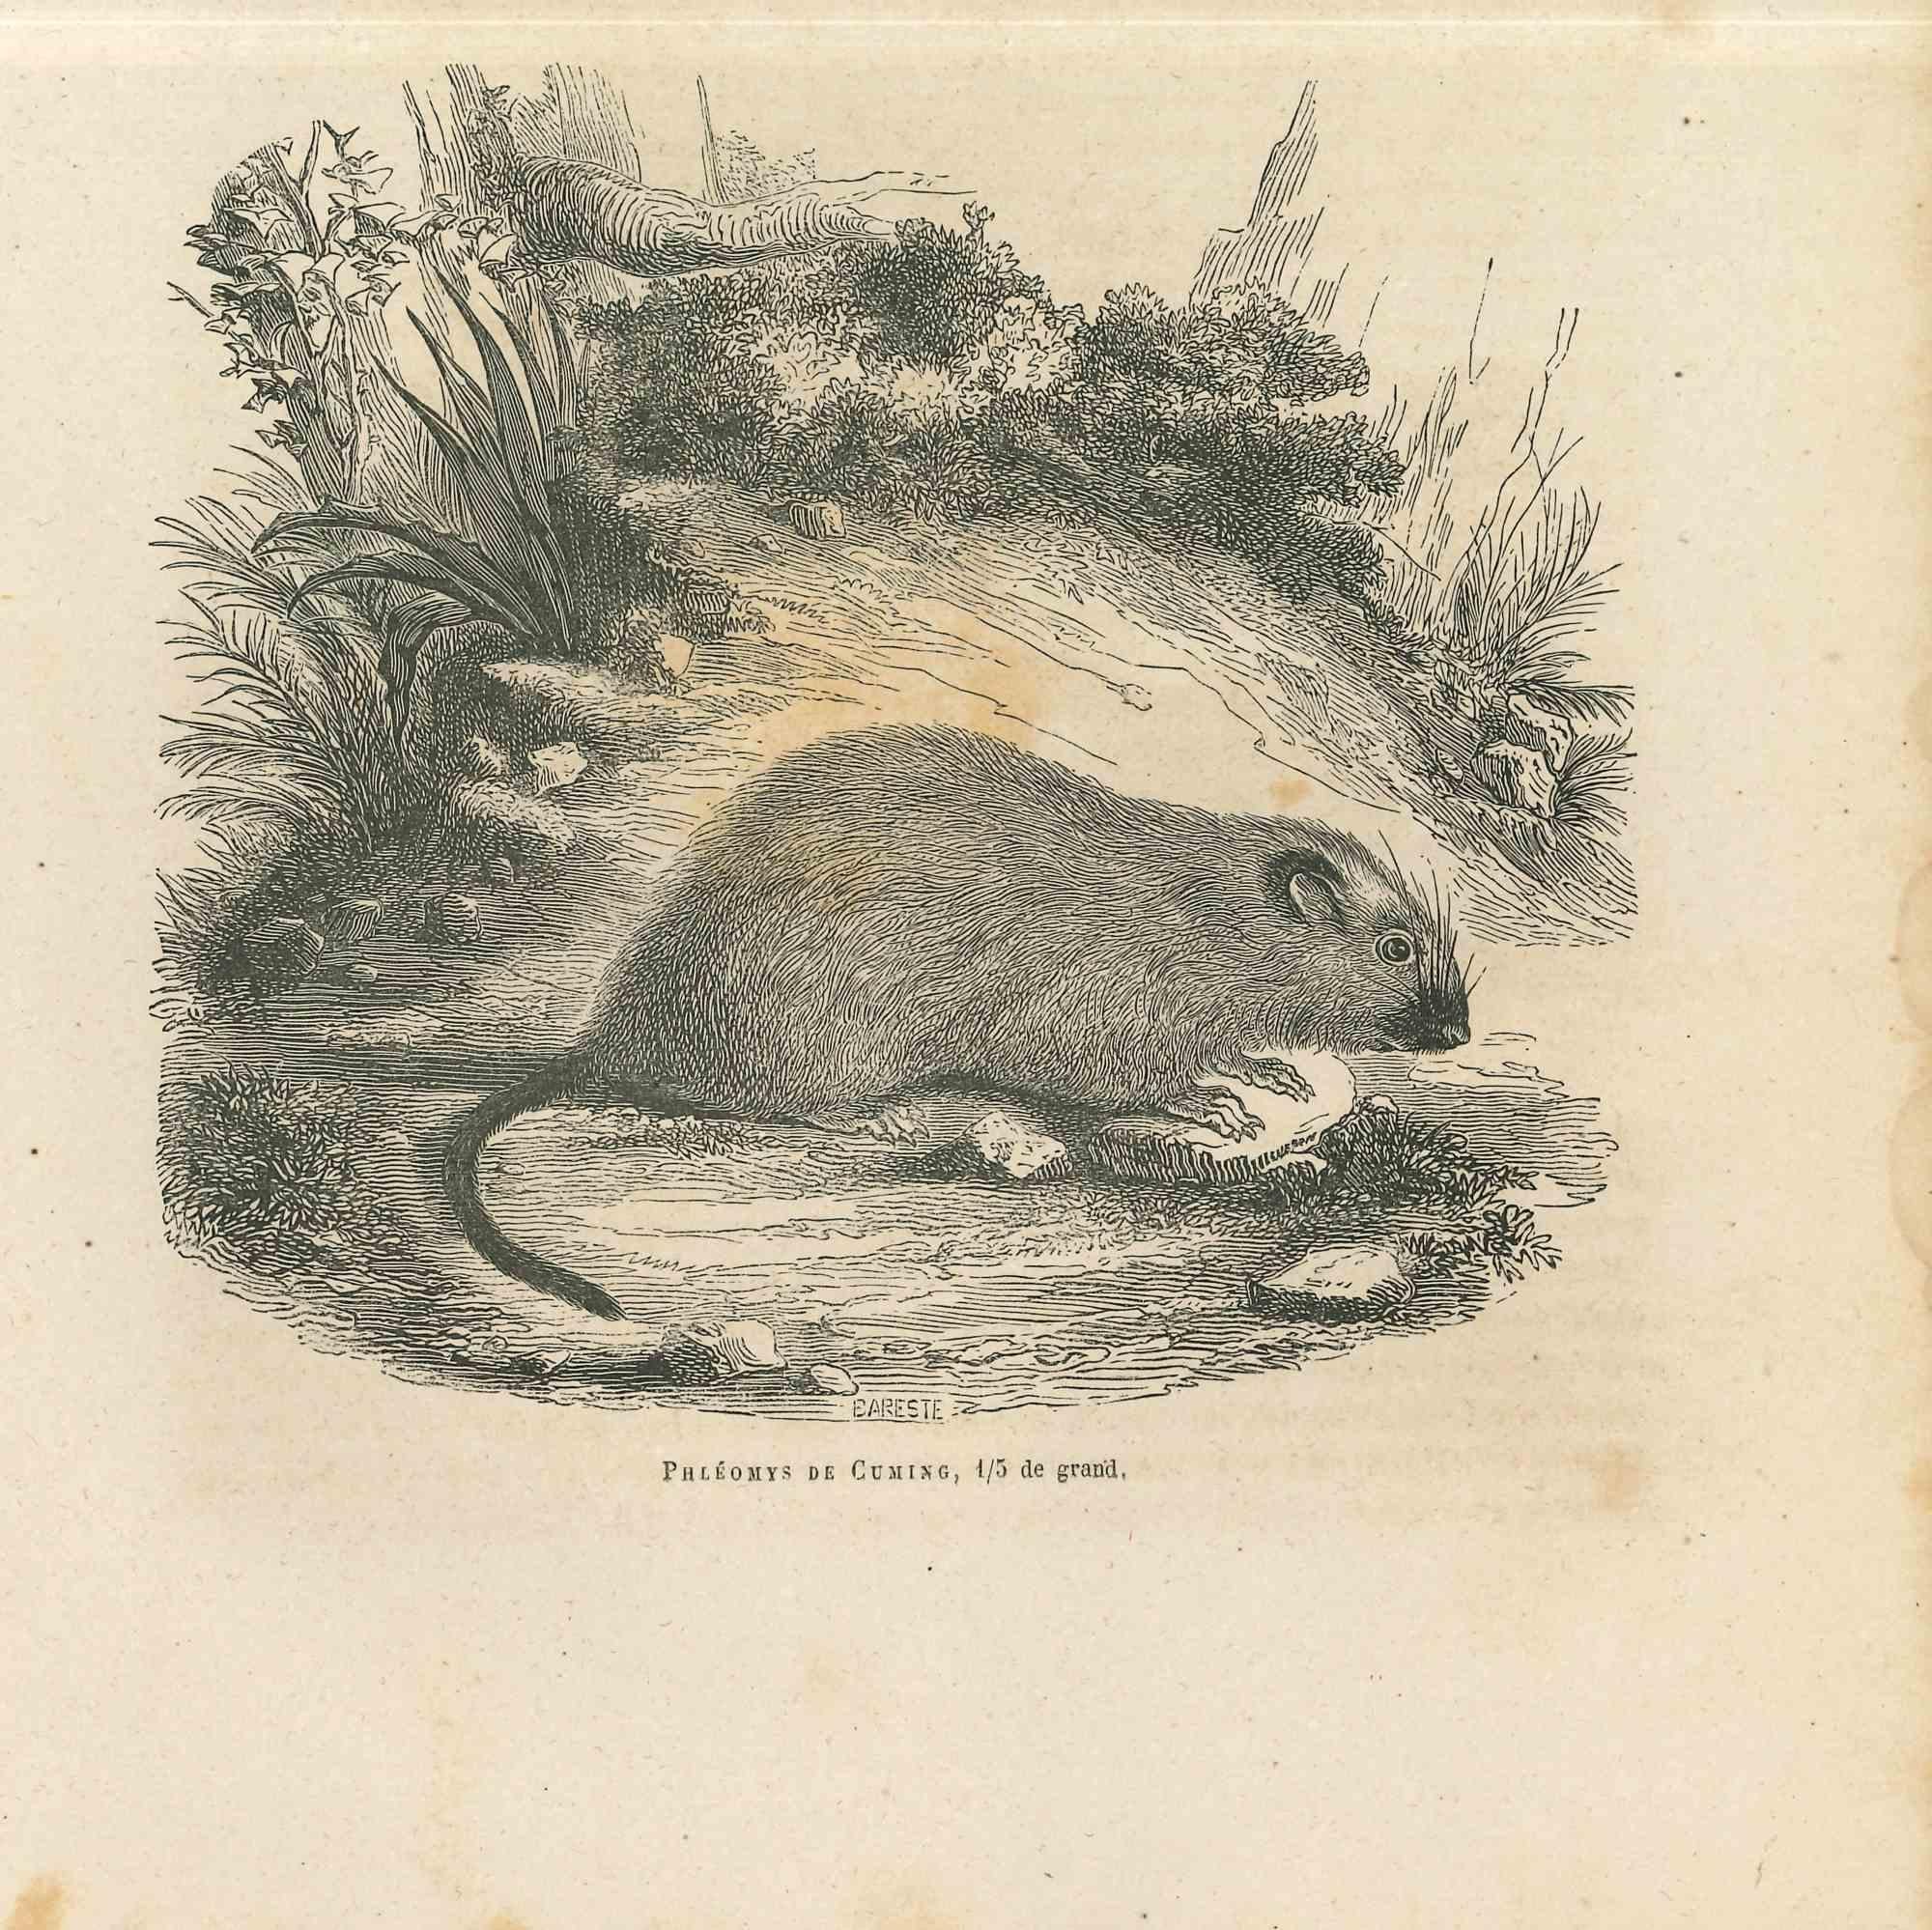 La Souris est une lithographie originale sur papier couleur ivoire, réalisée par Paul Gervais (1816-1879). L'œuvre est tirée de la série "Les Trois Règnes de la Nature", et a été publiée en 1854.

Bonnes conditions avec des taches mineures.

Titré